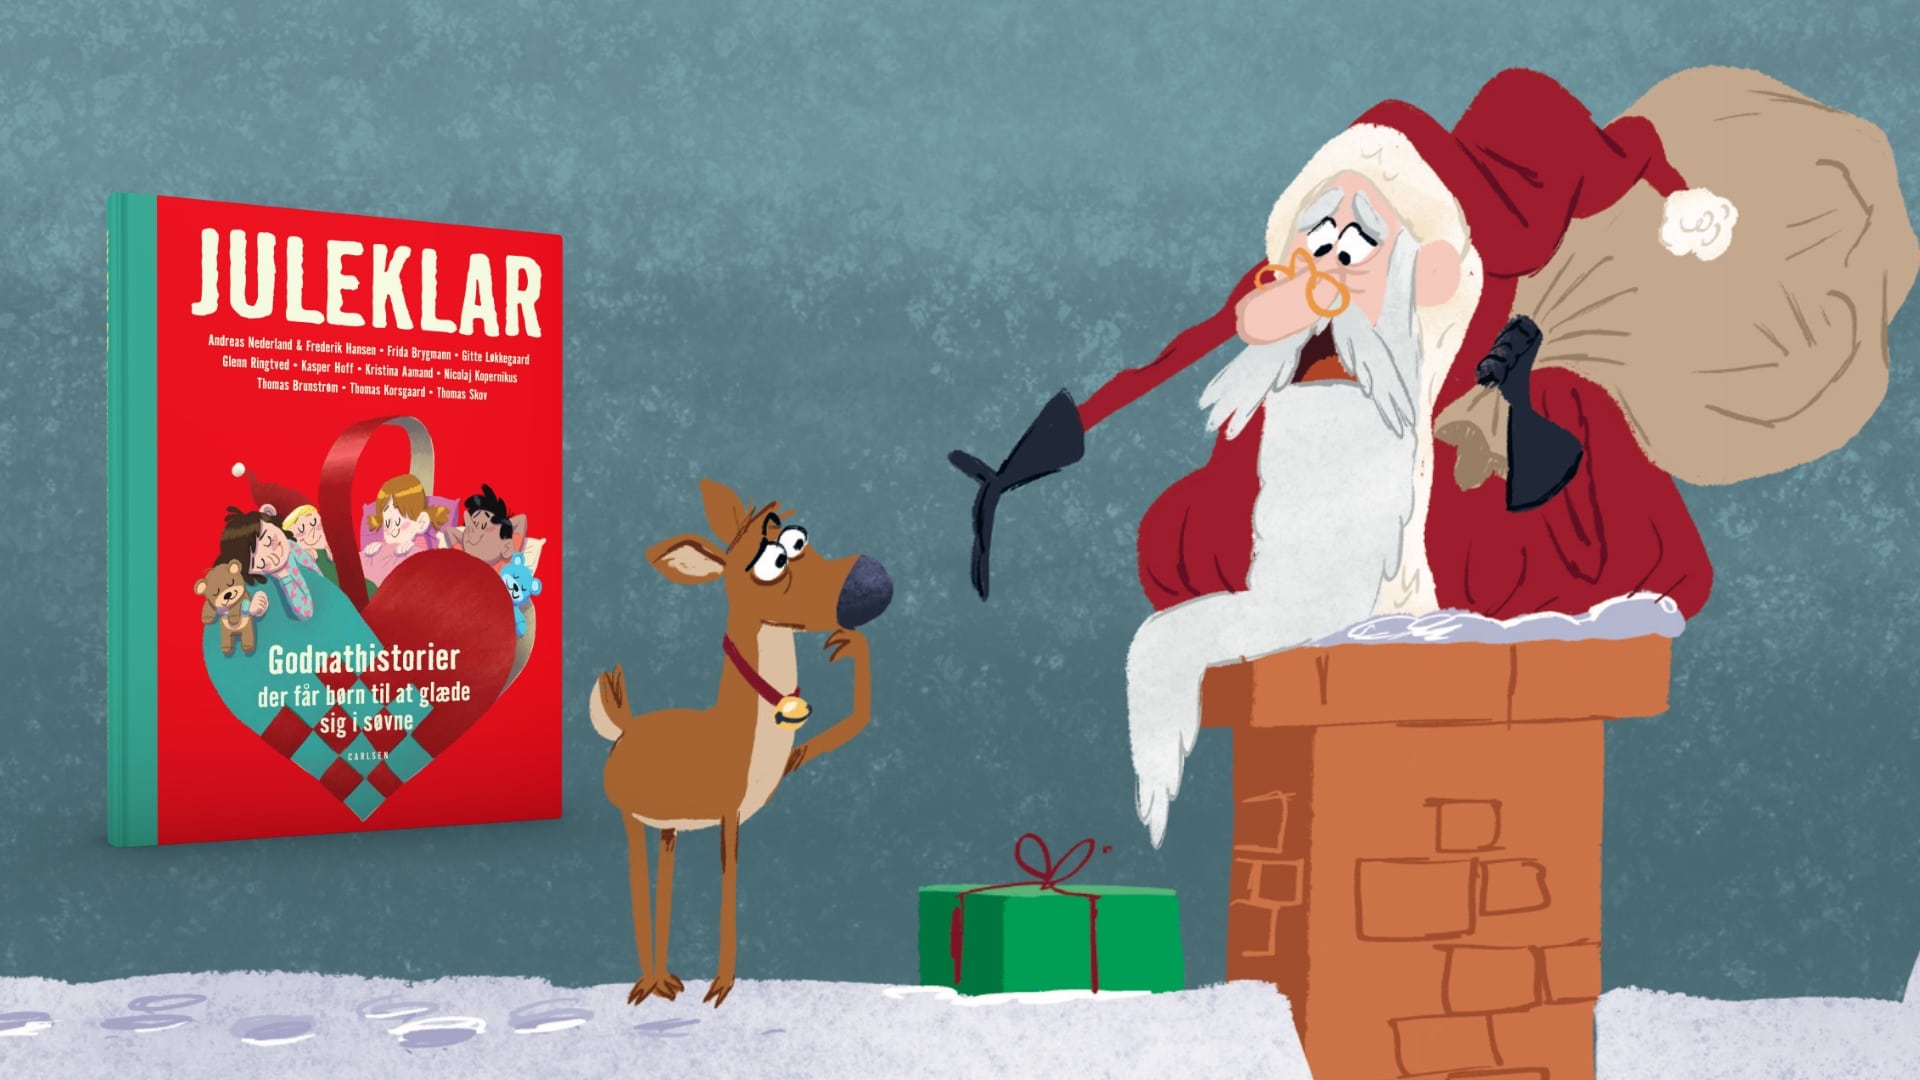 Så er der nye jule-godnathistorier! Smuglæs i Juleklar